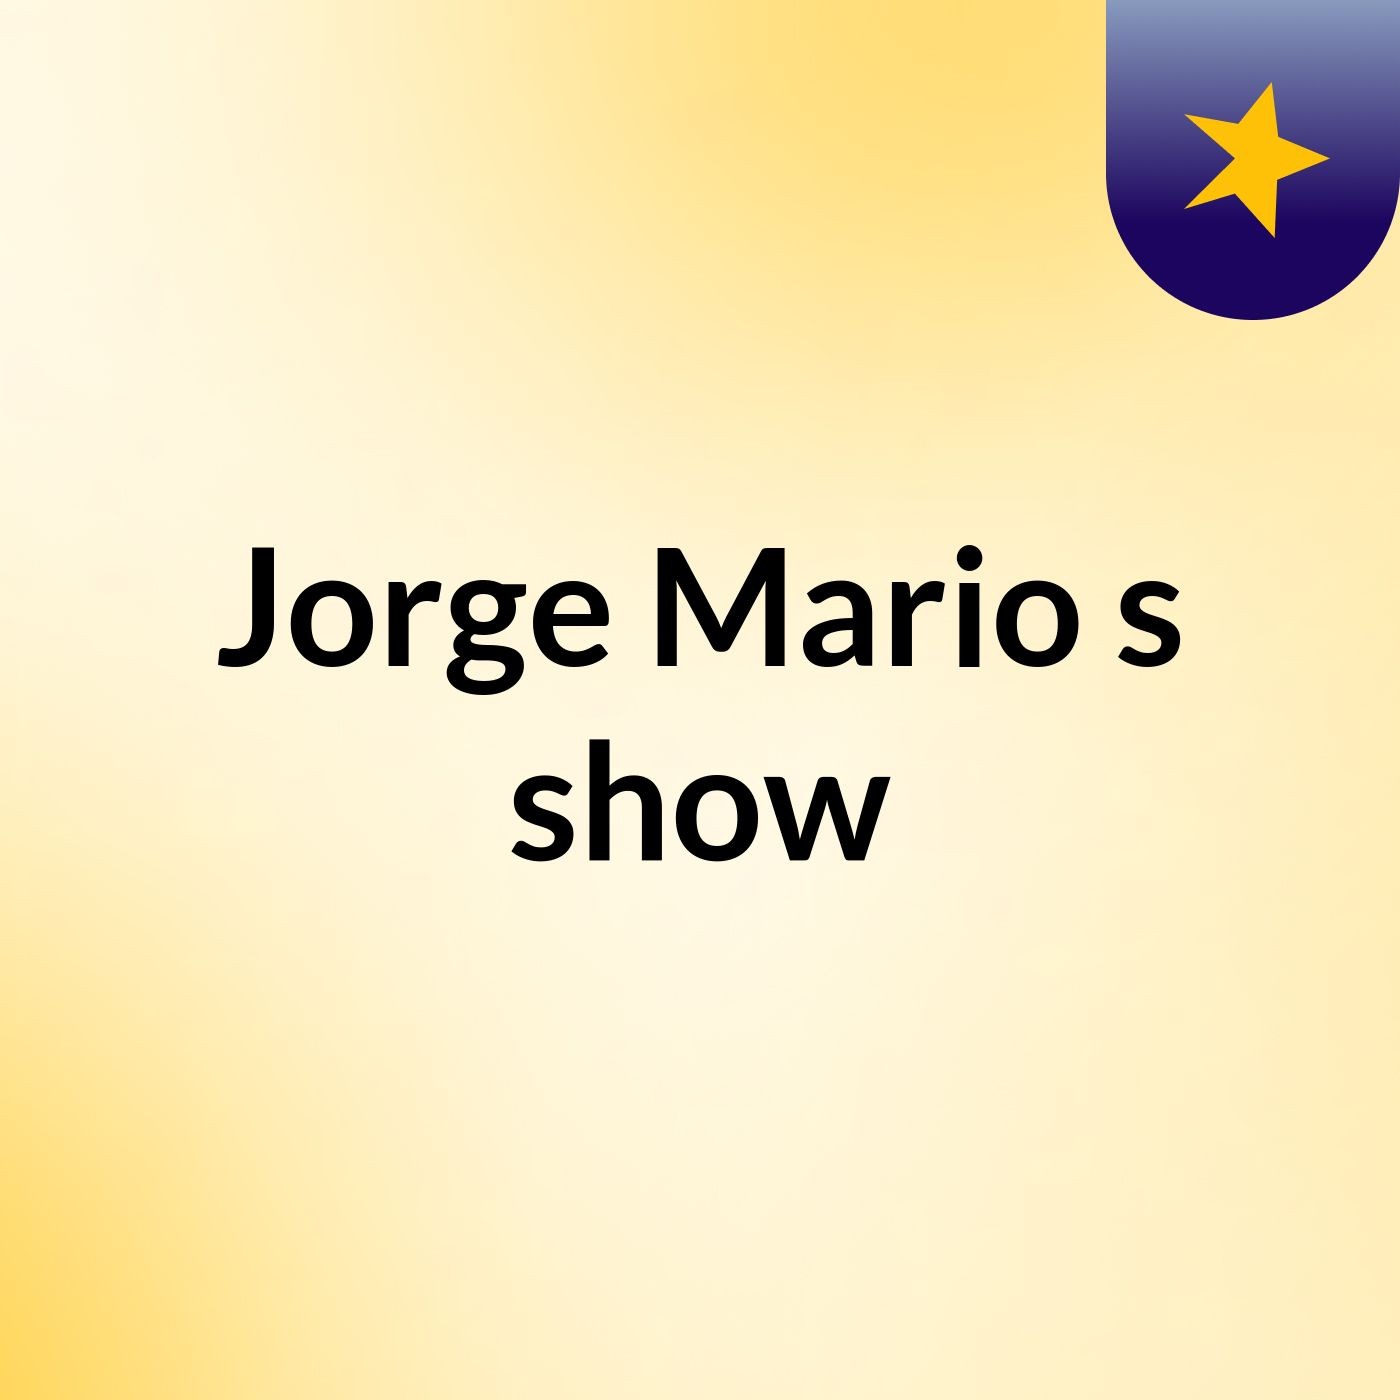 Jorge Mario's show